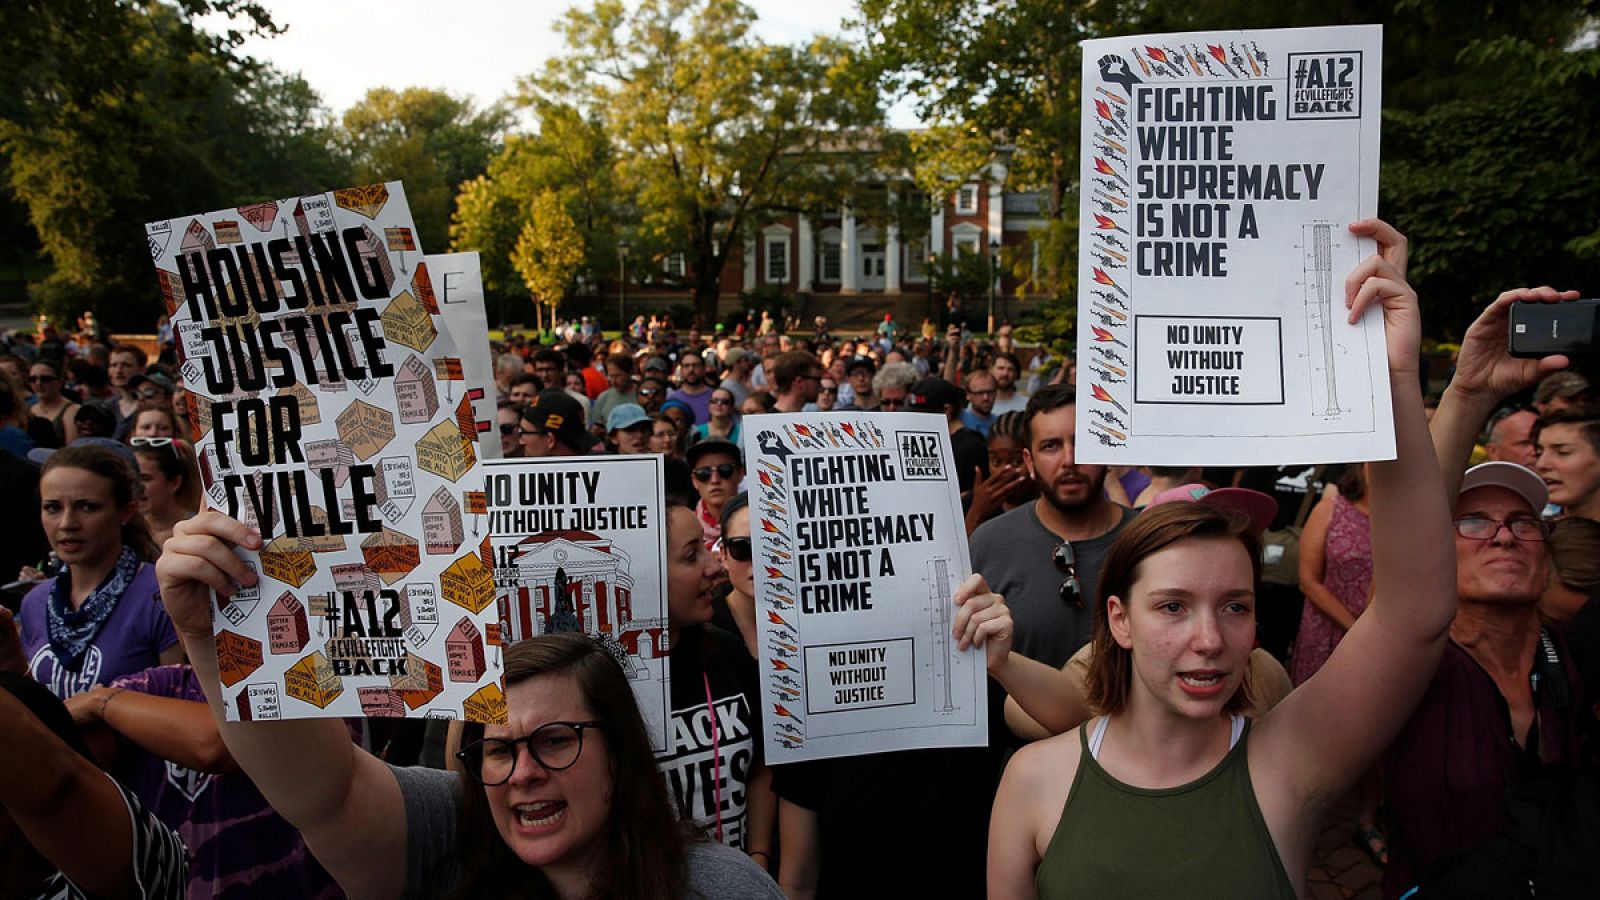 Imagen de la protesta de este sábado, 11 de agosto de 2018, contra el supremacismo blanco en Charlottesville, Virginia (EE.UU.).